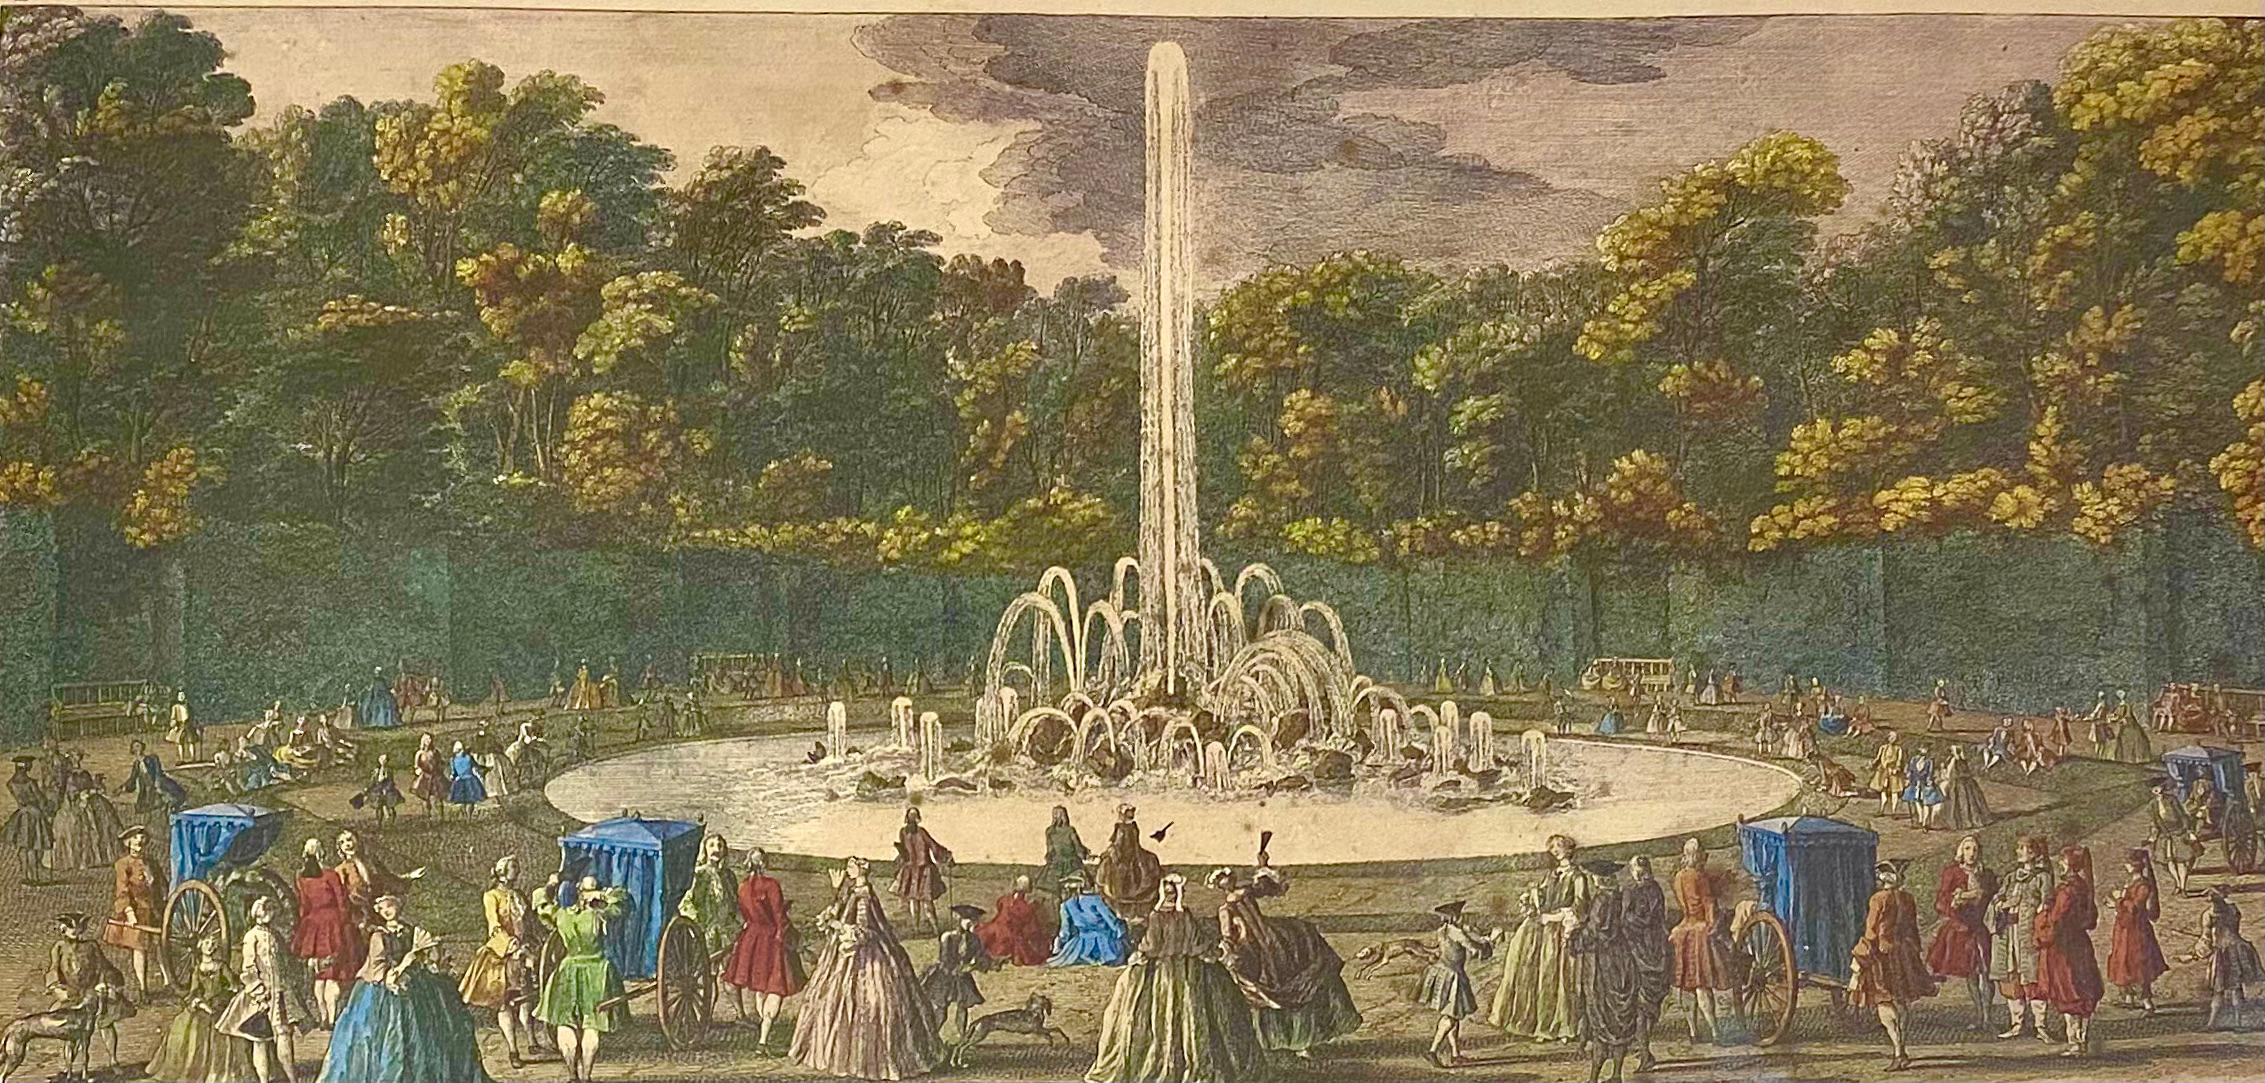 Große gerahmte französische Radierung von Versailles - Le Bassin d'Encelade
Ein Paar Drucke zum Thema Versailles erhältlich.
Aus Mis en Demeure, Paris.